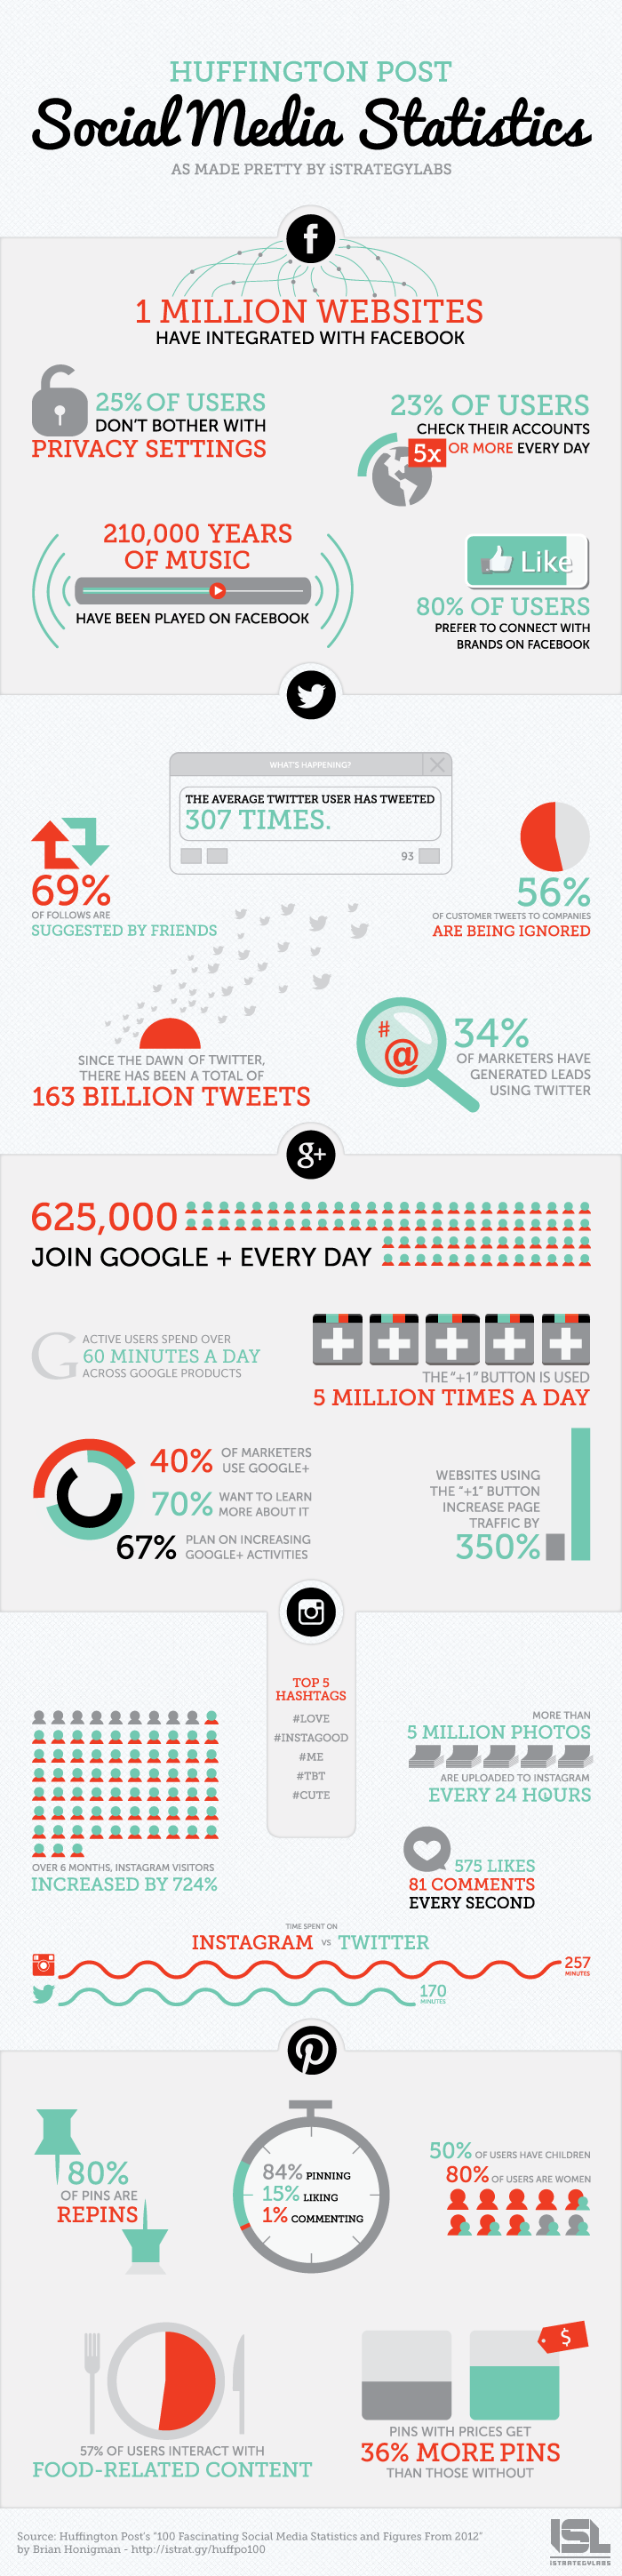 estadísticas del social media en 2012